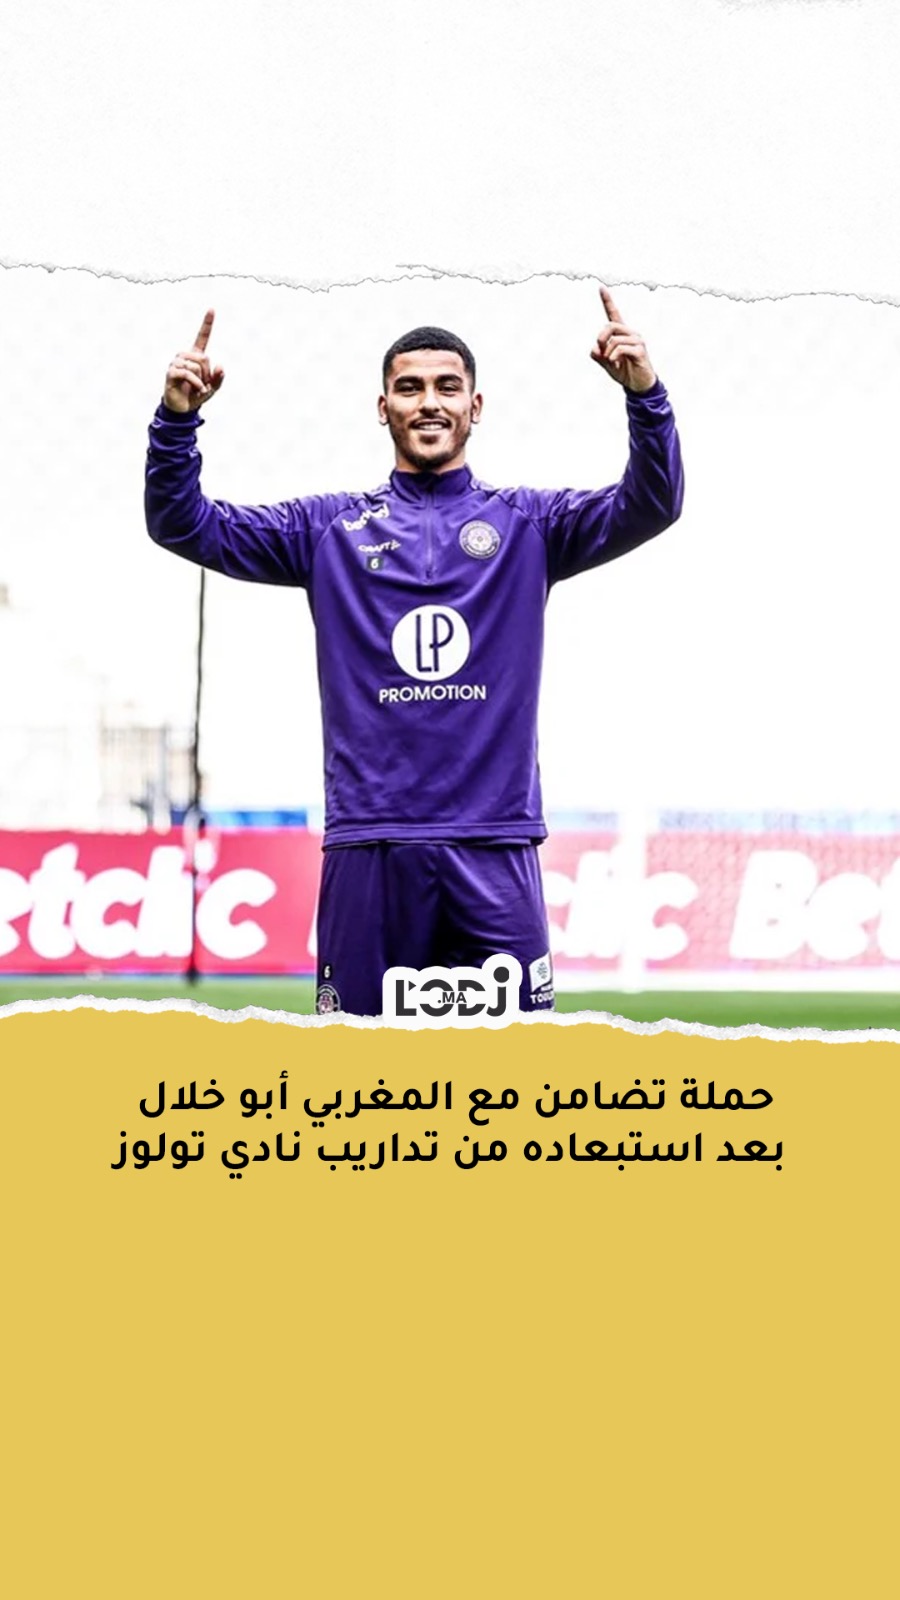 حملة تضامن مع المغربي أبو خلال بعد استبعاده من تداريب نادي تولوز